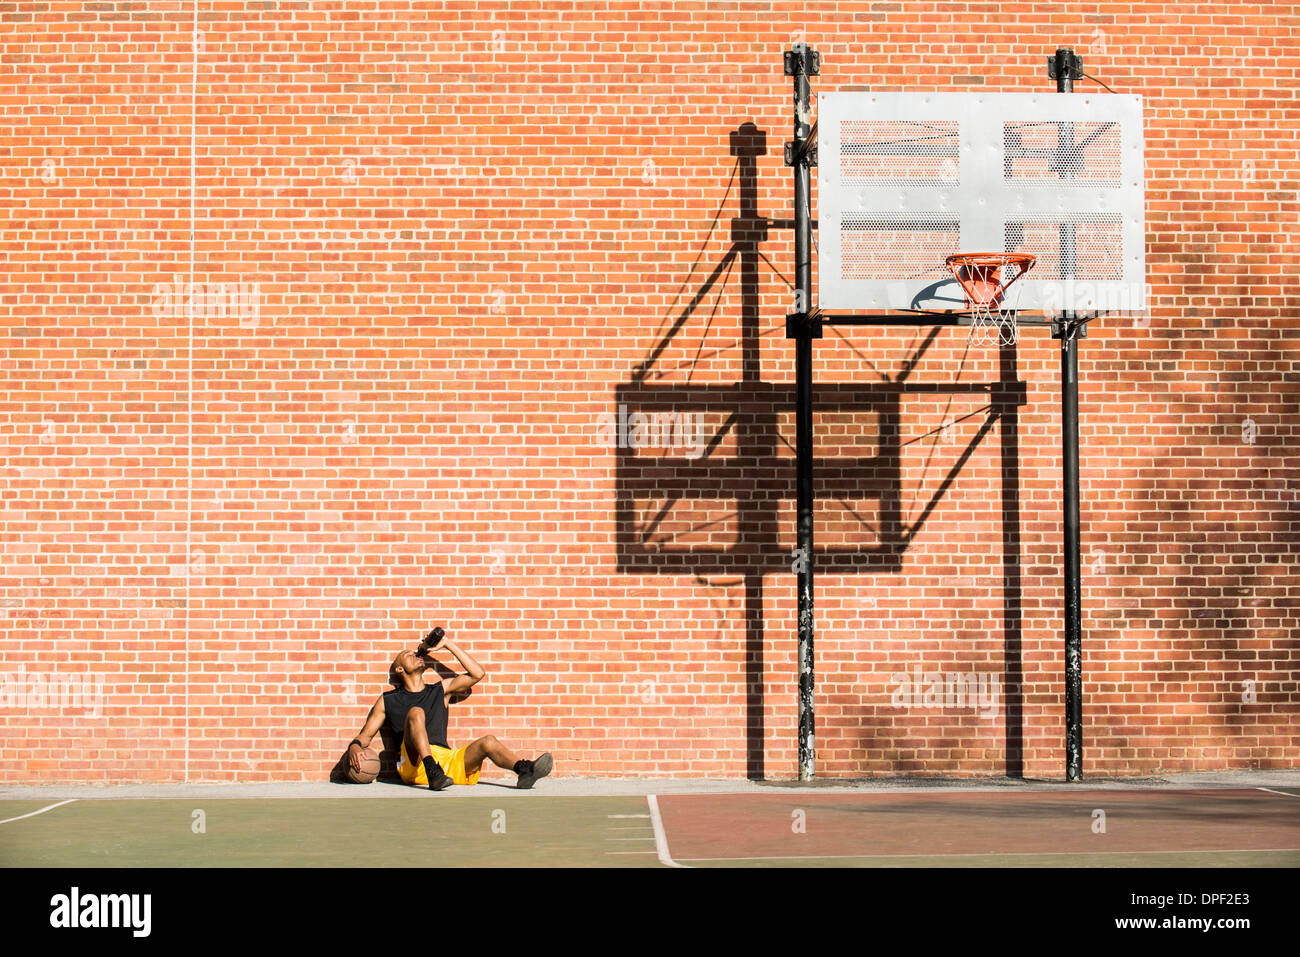 Joueur de basket-ball en appui sur cour Banque D'Images